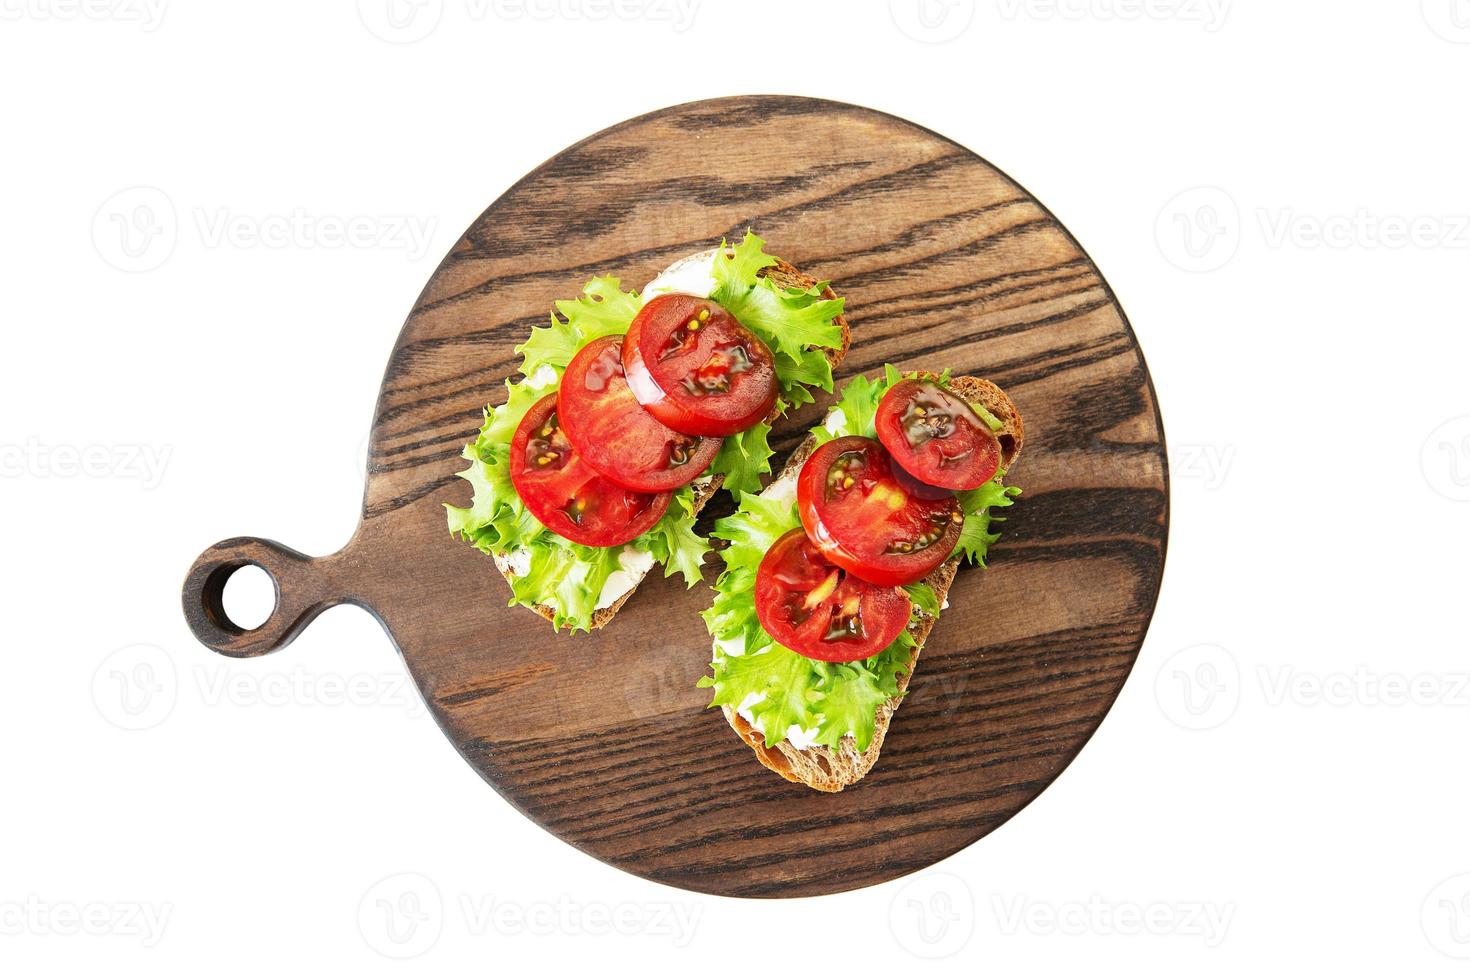 dos sándwiches con requesón, tomates y ensalada foto